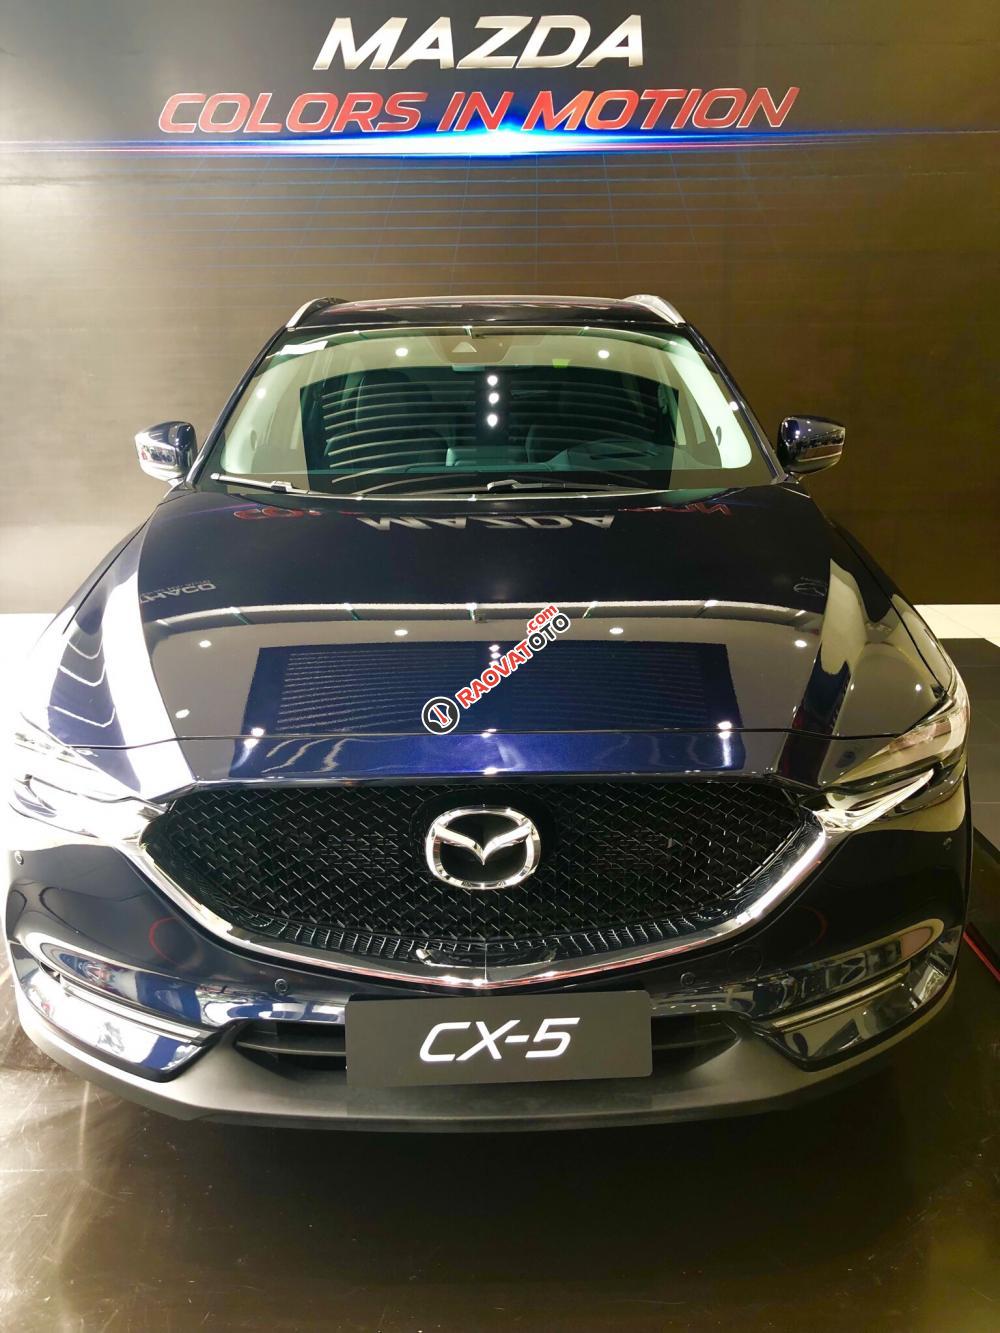 Bán Mazda CX5 giá từ 849tr xe giao ngay, đủ màu, phiên bản, liên hệ ngay với chúng tôi để nhận được ưu đãi tốt nhất-7